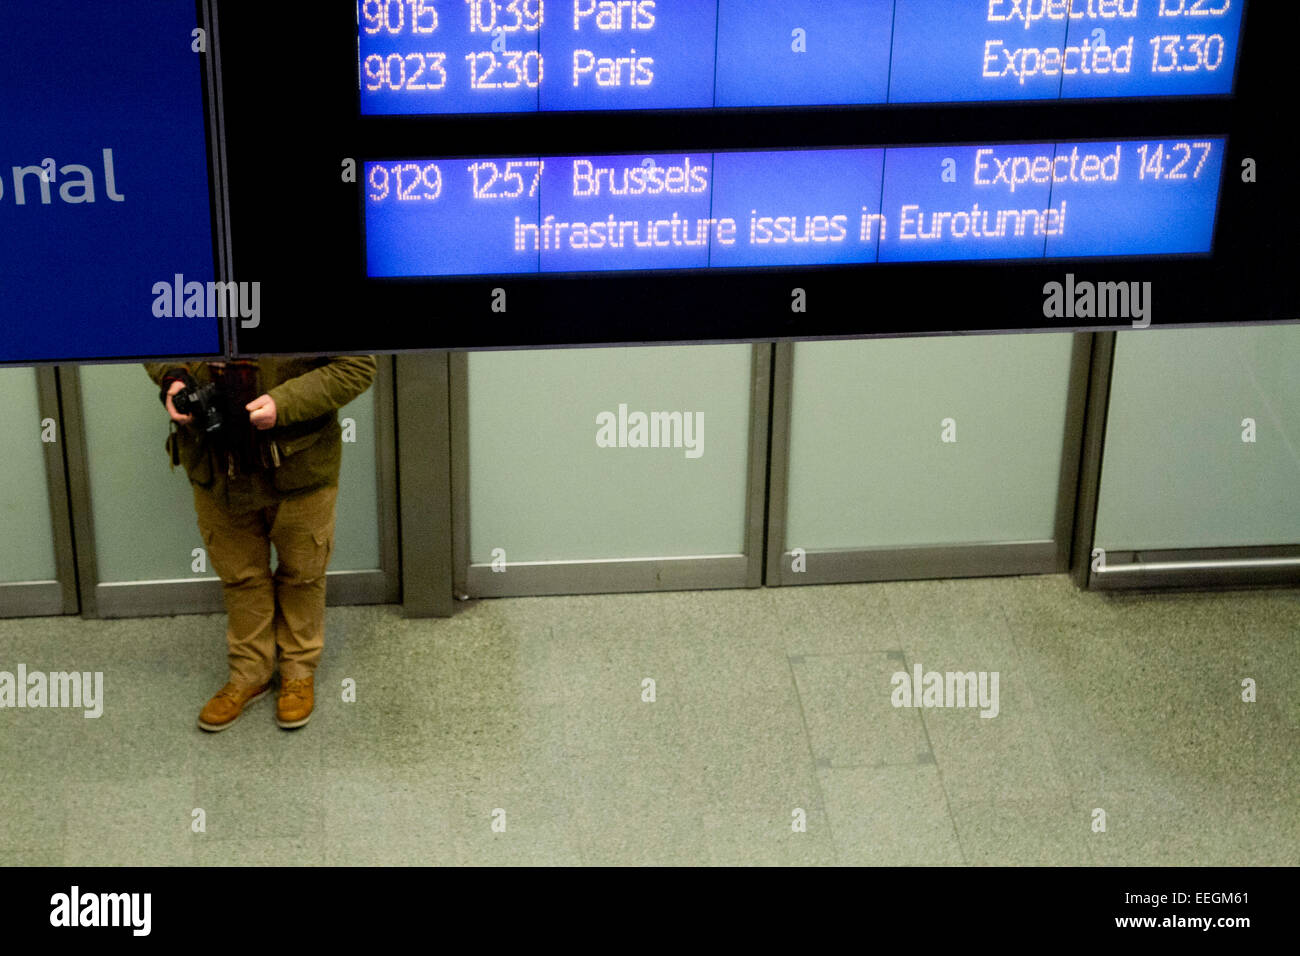 Londra, Regno Unito. 18 gennaio, 2015. Passeggeri faccia ritardi a St Pancras International come Eurostar tenta di eliminare il ritardo causato da un incendio sul credito Eurotunnel: amer ghazzal/Alamy Live News Foto Stock